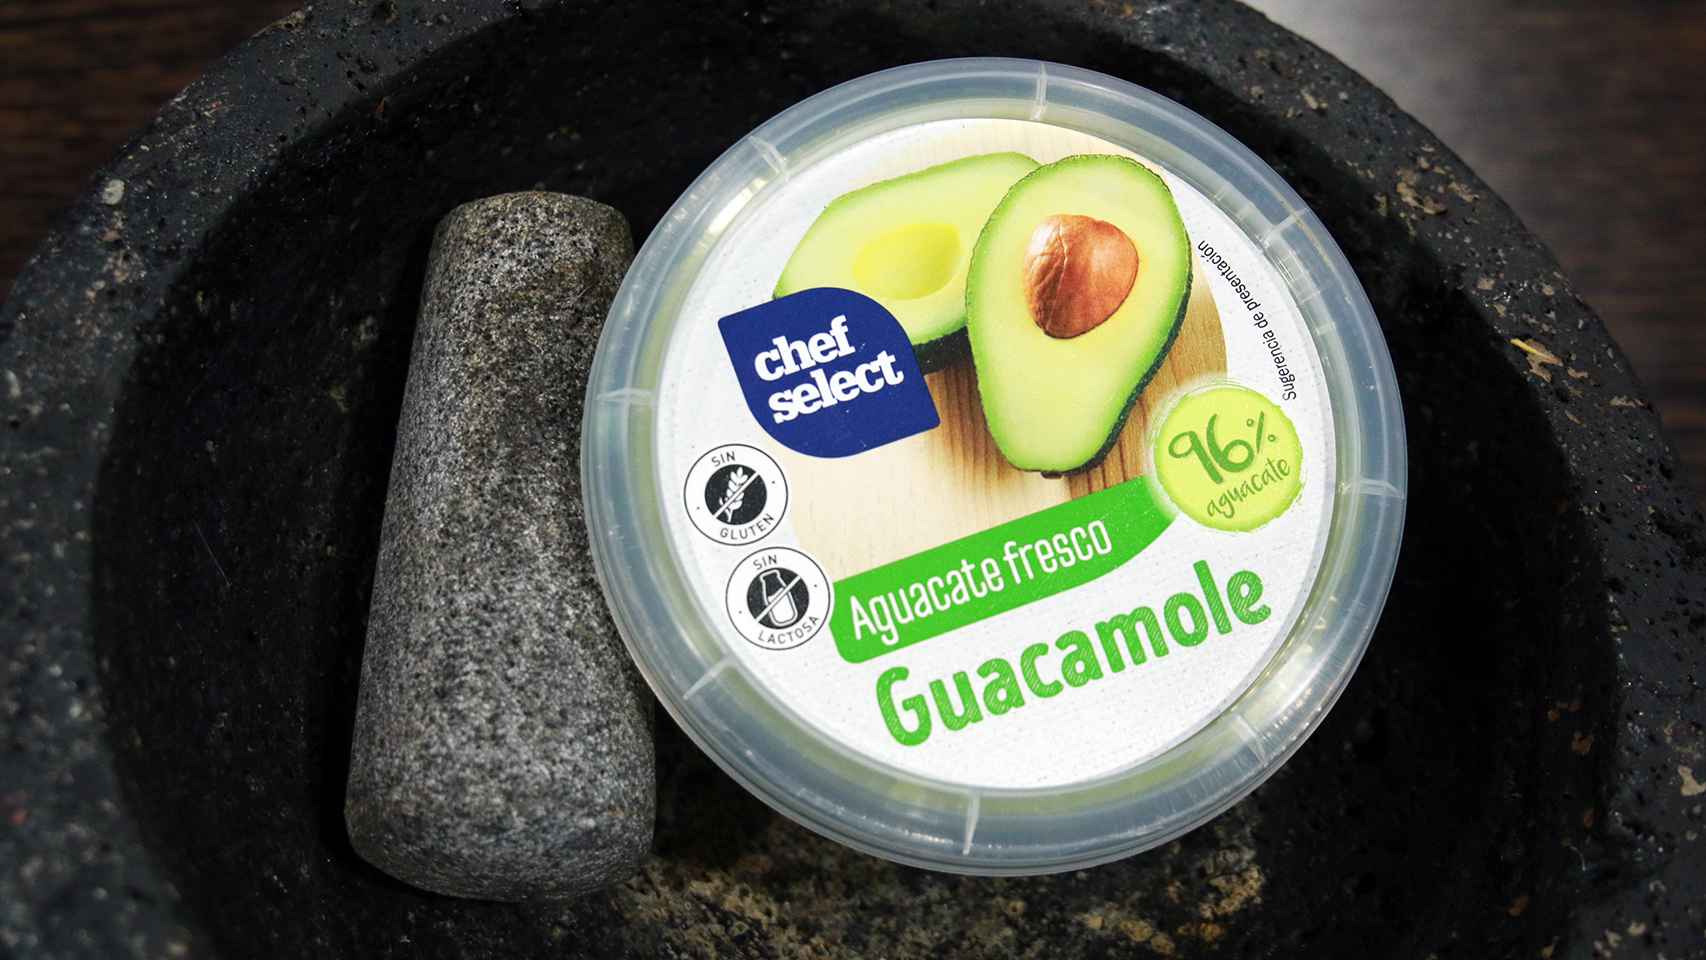 El bote de 200 gramos de guacamole de Chef Select, la marca blanca de Lidl.